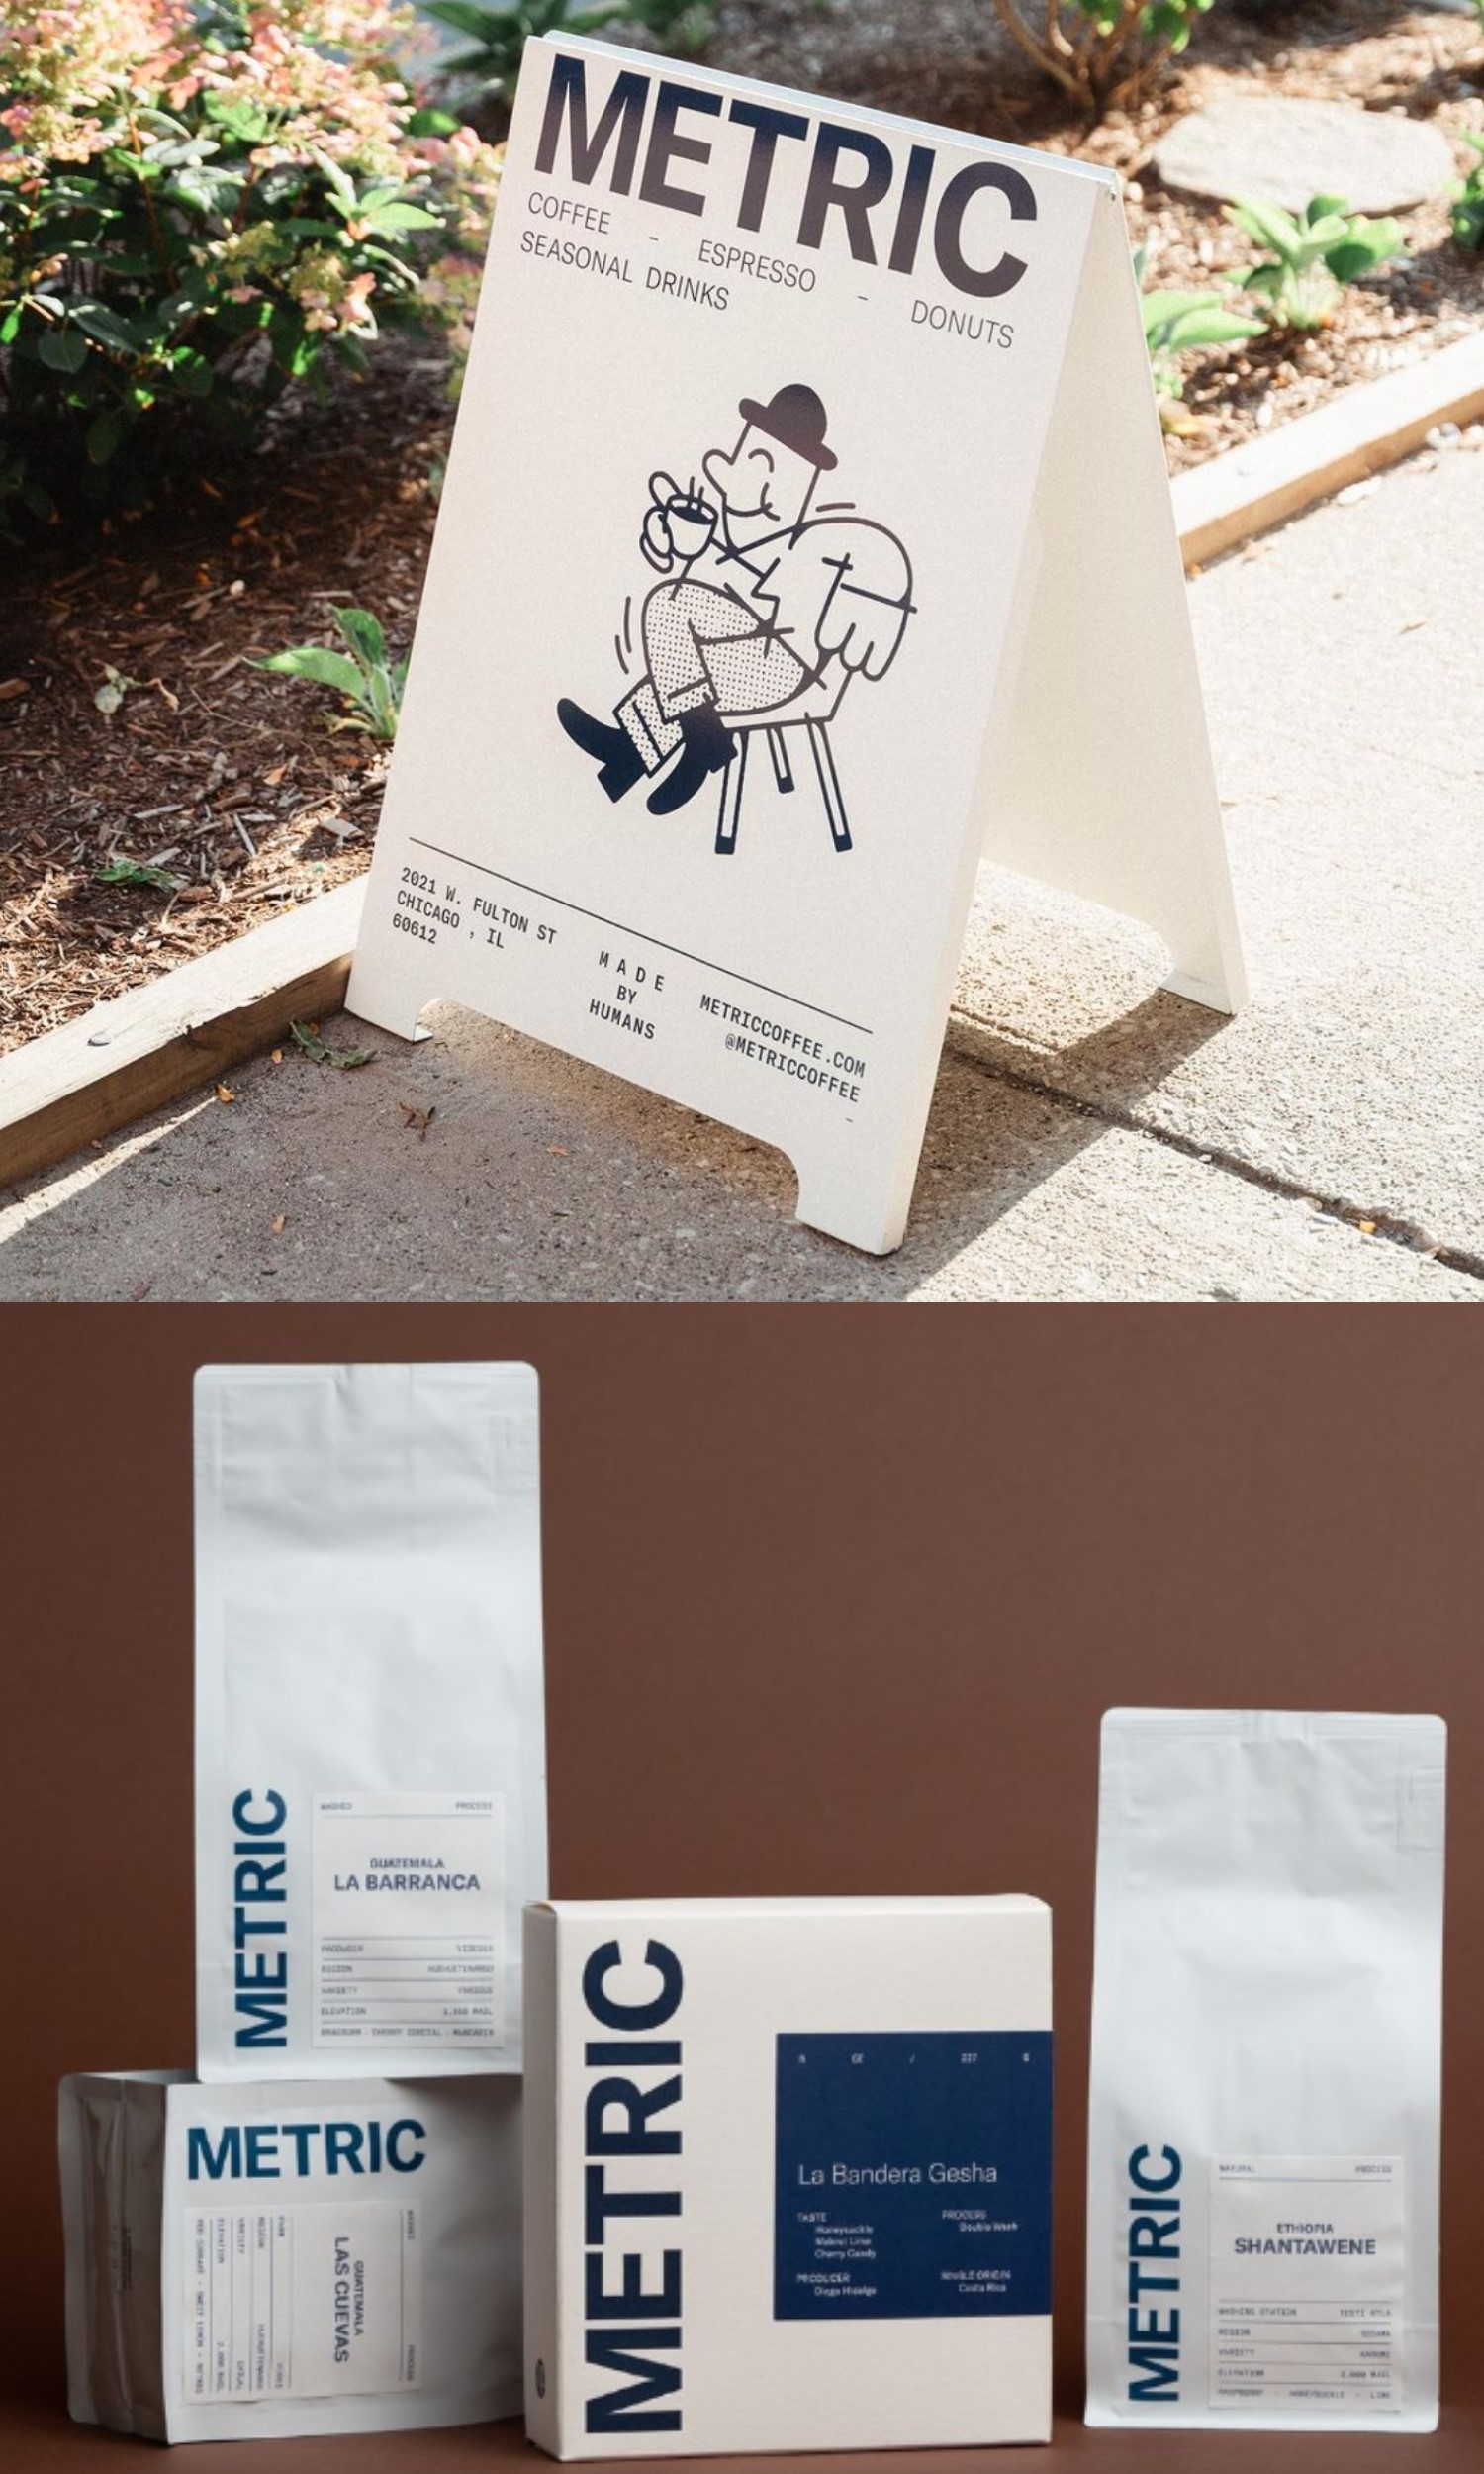 Metric Coffee Packaging